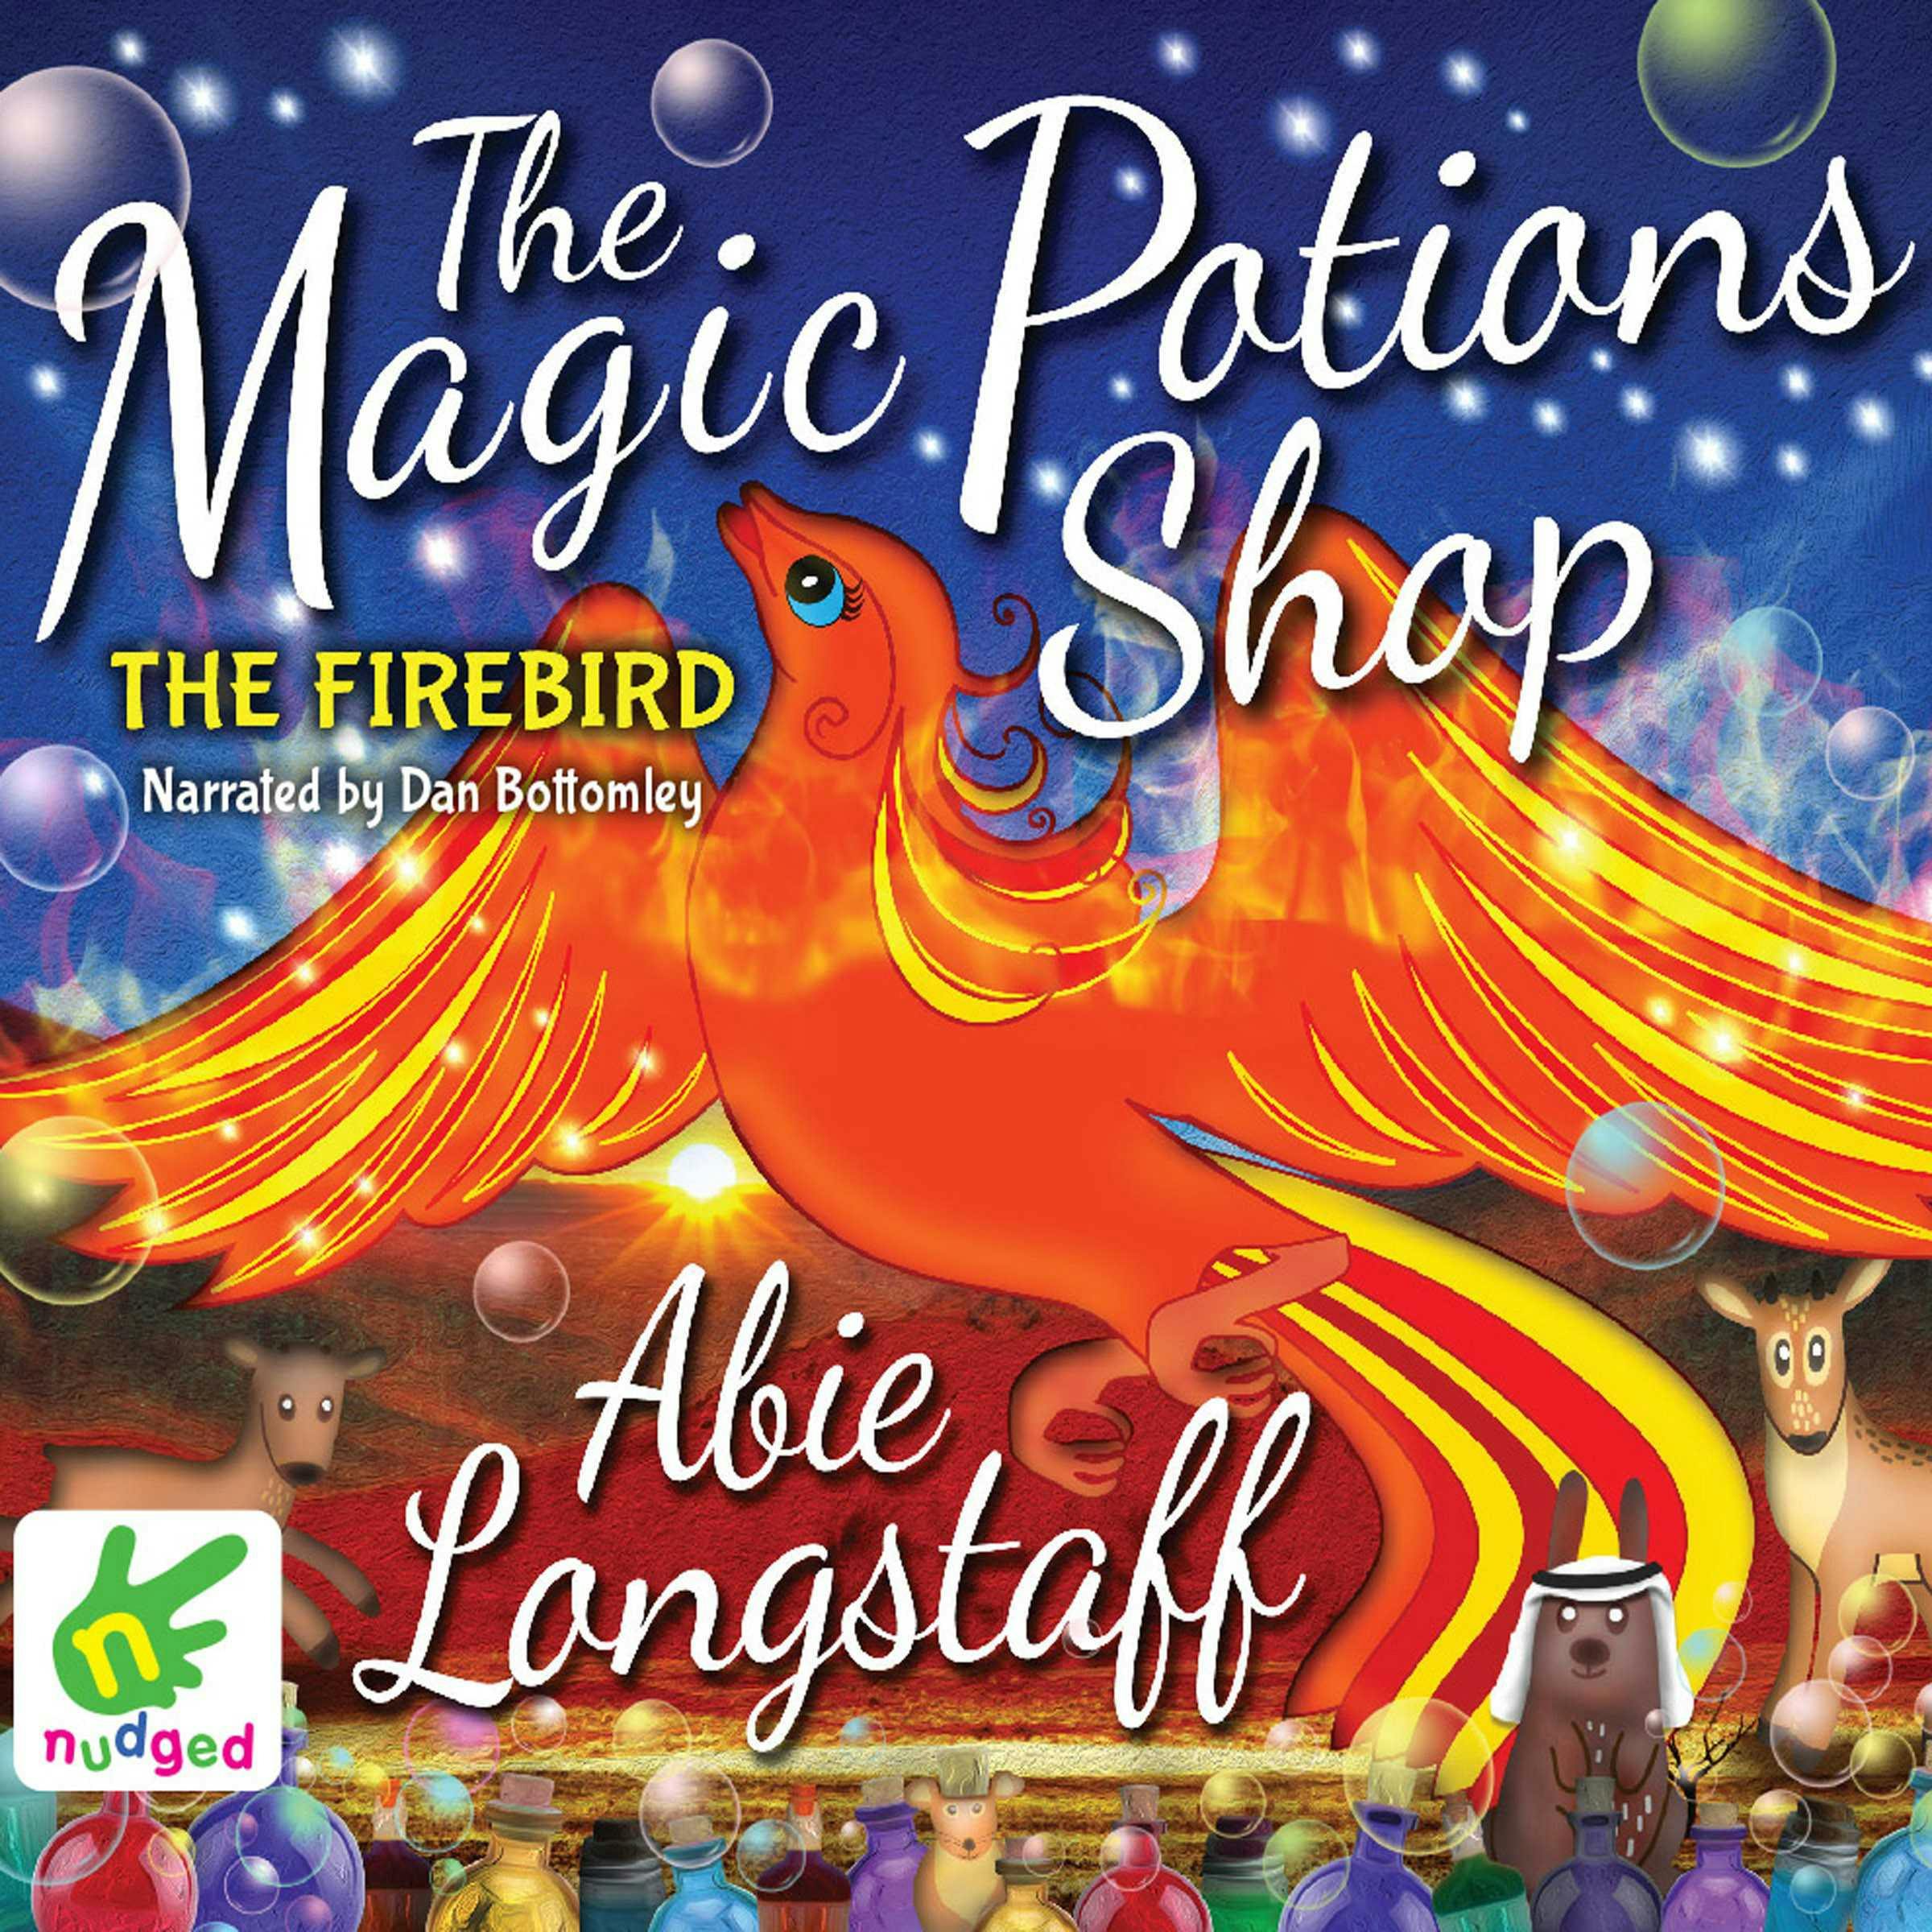 The Firebird - Abie Longstaff